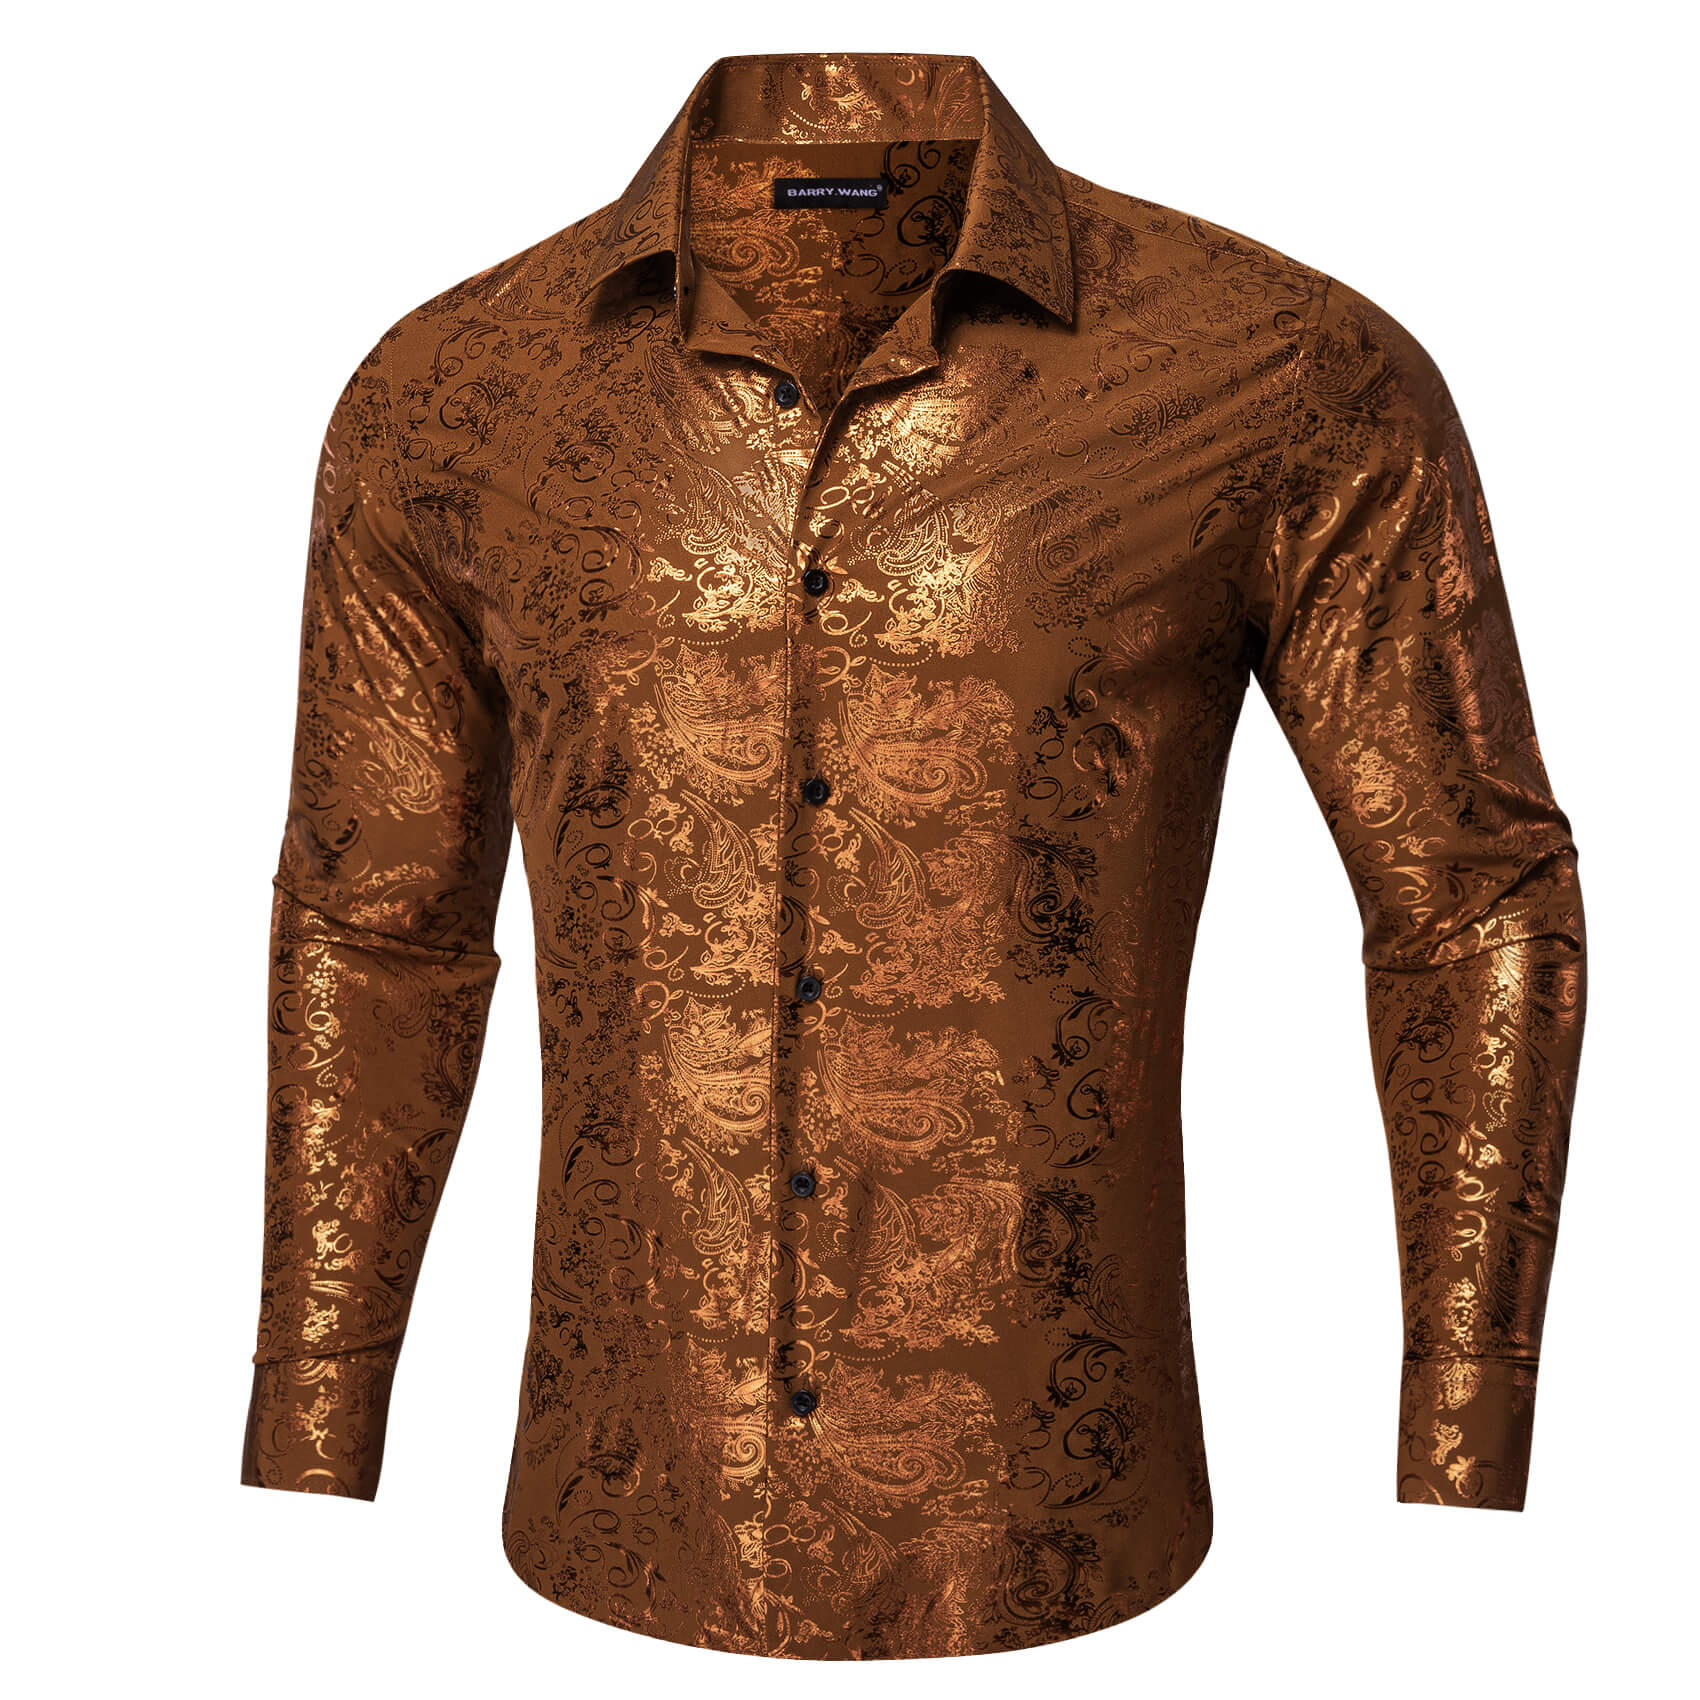 Barry.wang Bronzing Floral Shirt Silk Caramel Brown Men's Long Sleeve Shirt